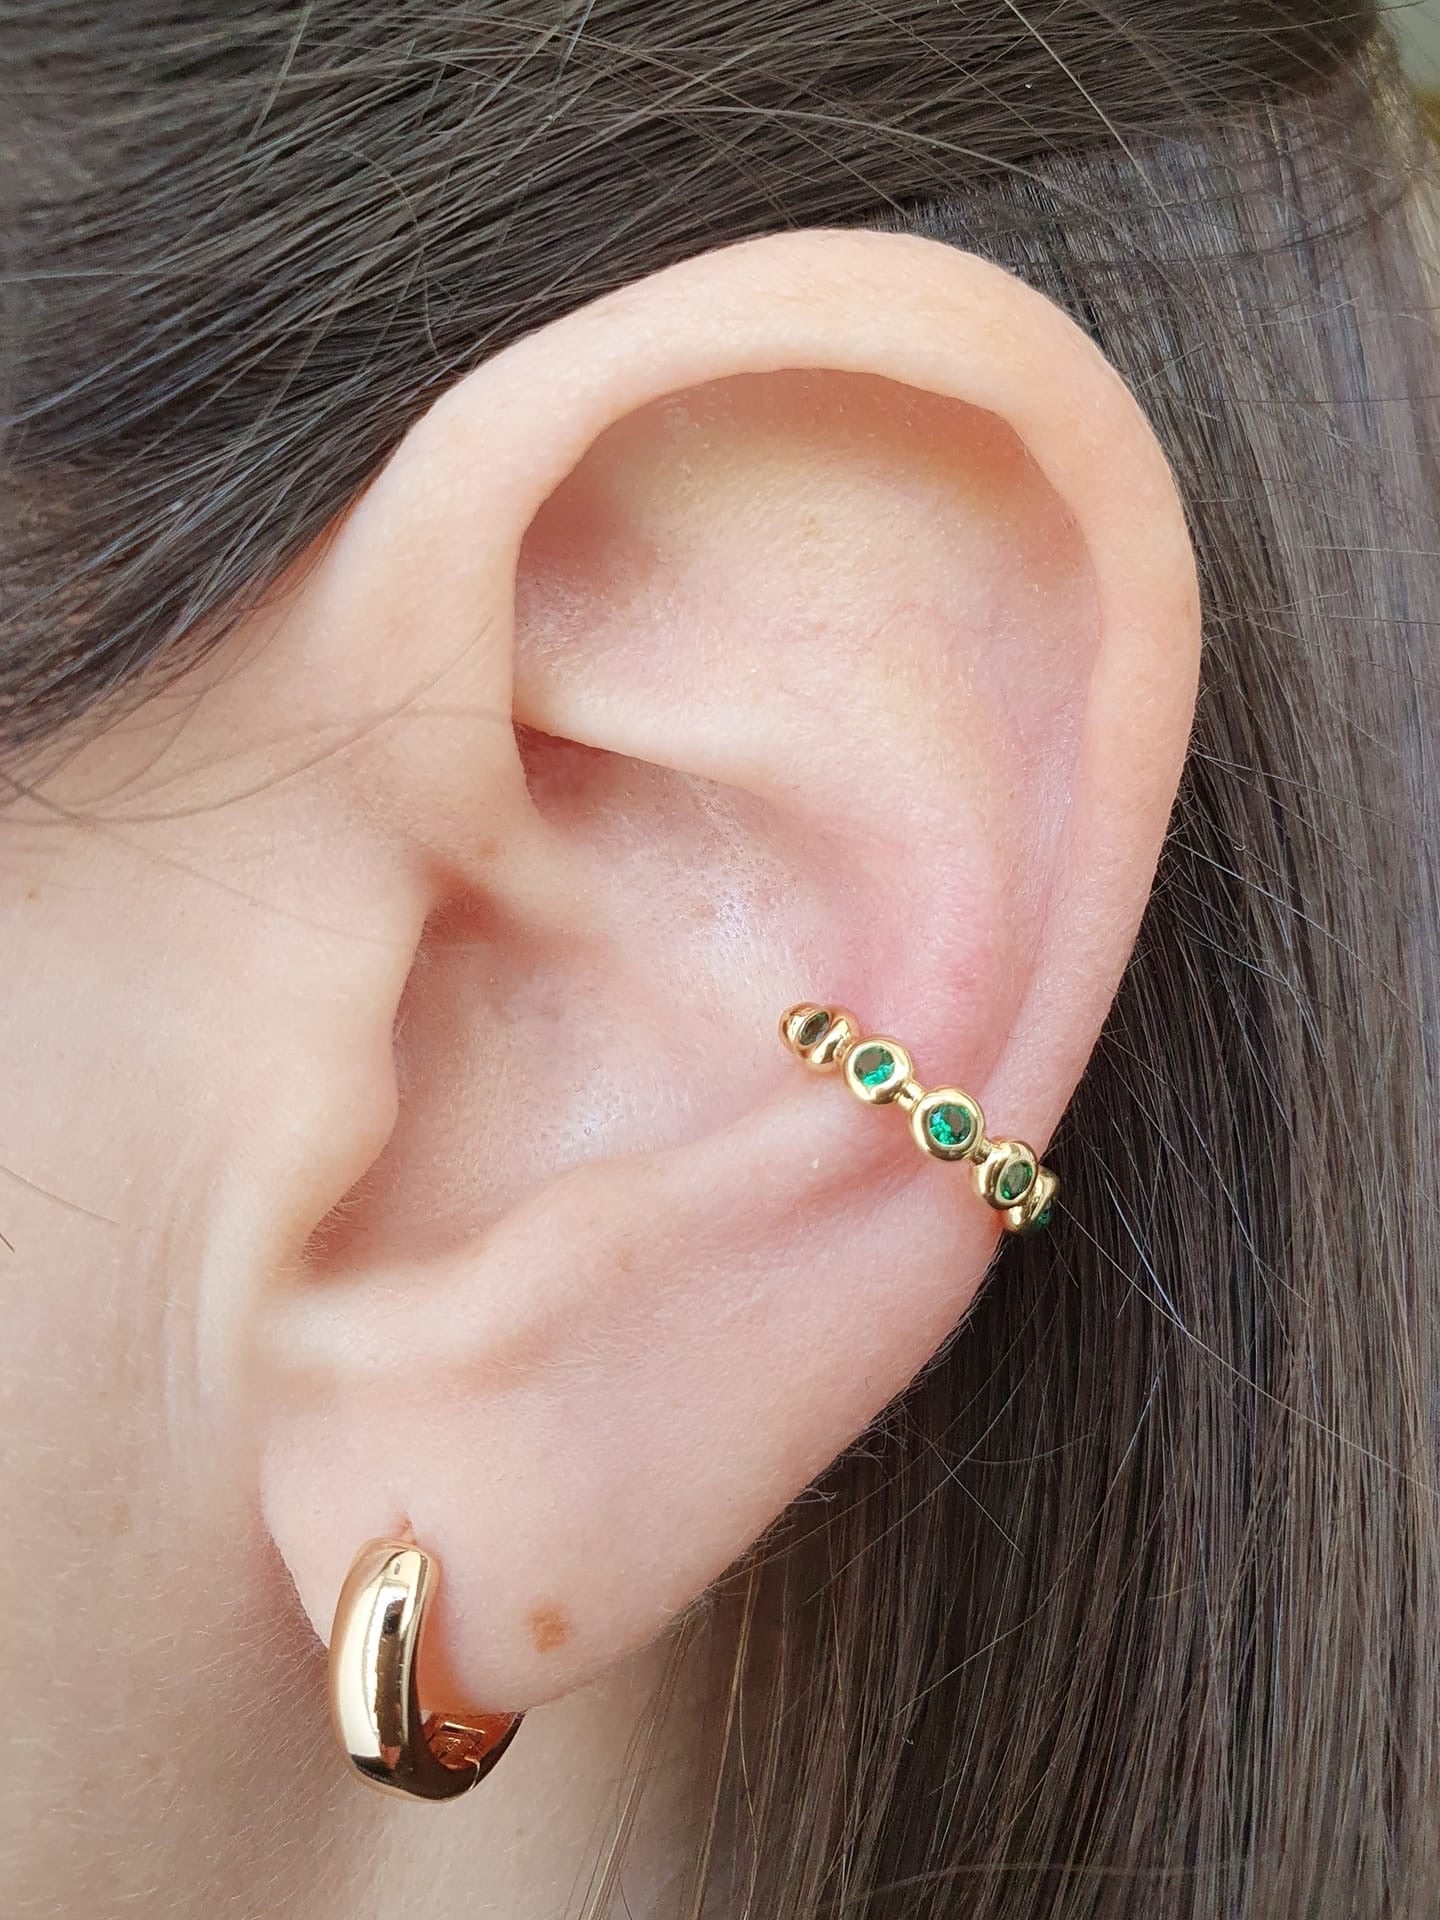 Ear cuff “Roby” gold con pietre color smeraldo - 333HOPE333